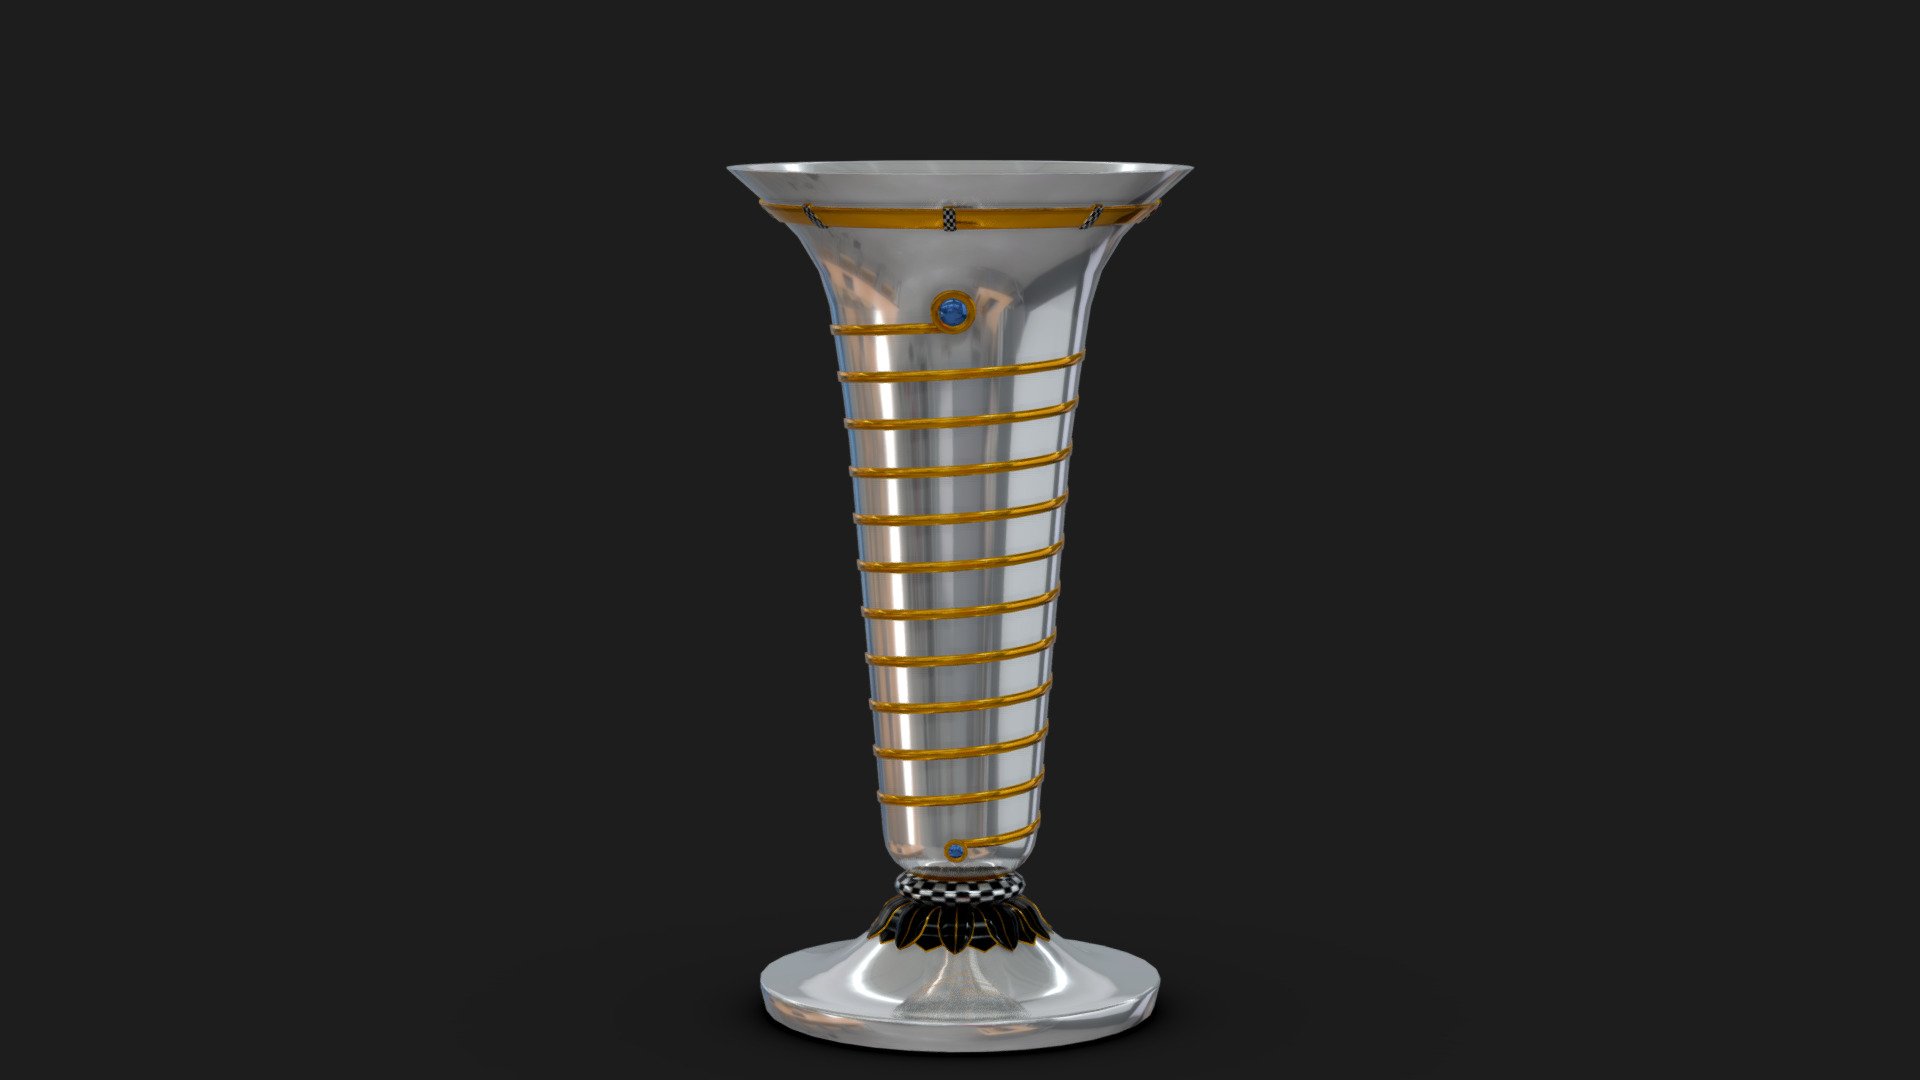 F1 World Driver Championship Trophy 3D - Buy Royalty Free 3D model by Shin Xiba 3D (@Xiba3D) 3d model